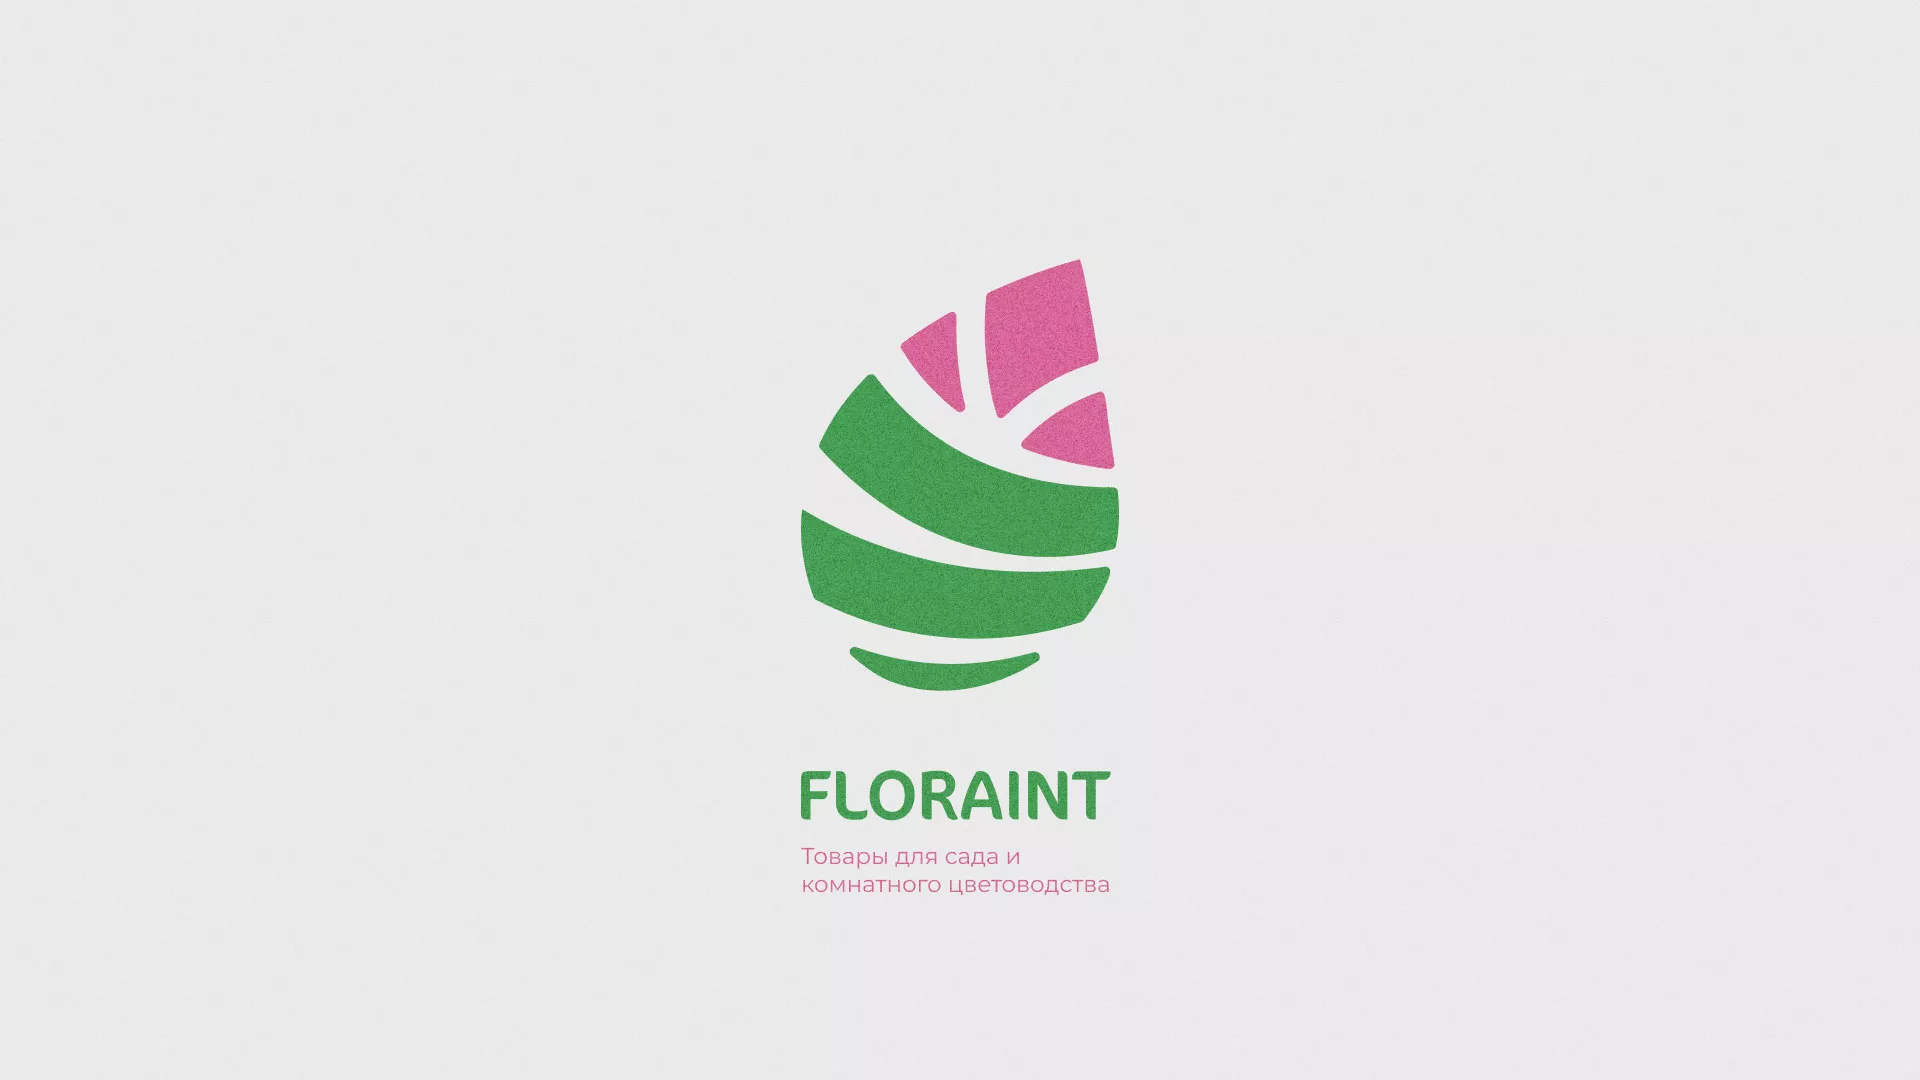 Разработка оформления профиля Instagram для магазина «Floraint» в Коле